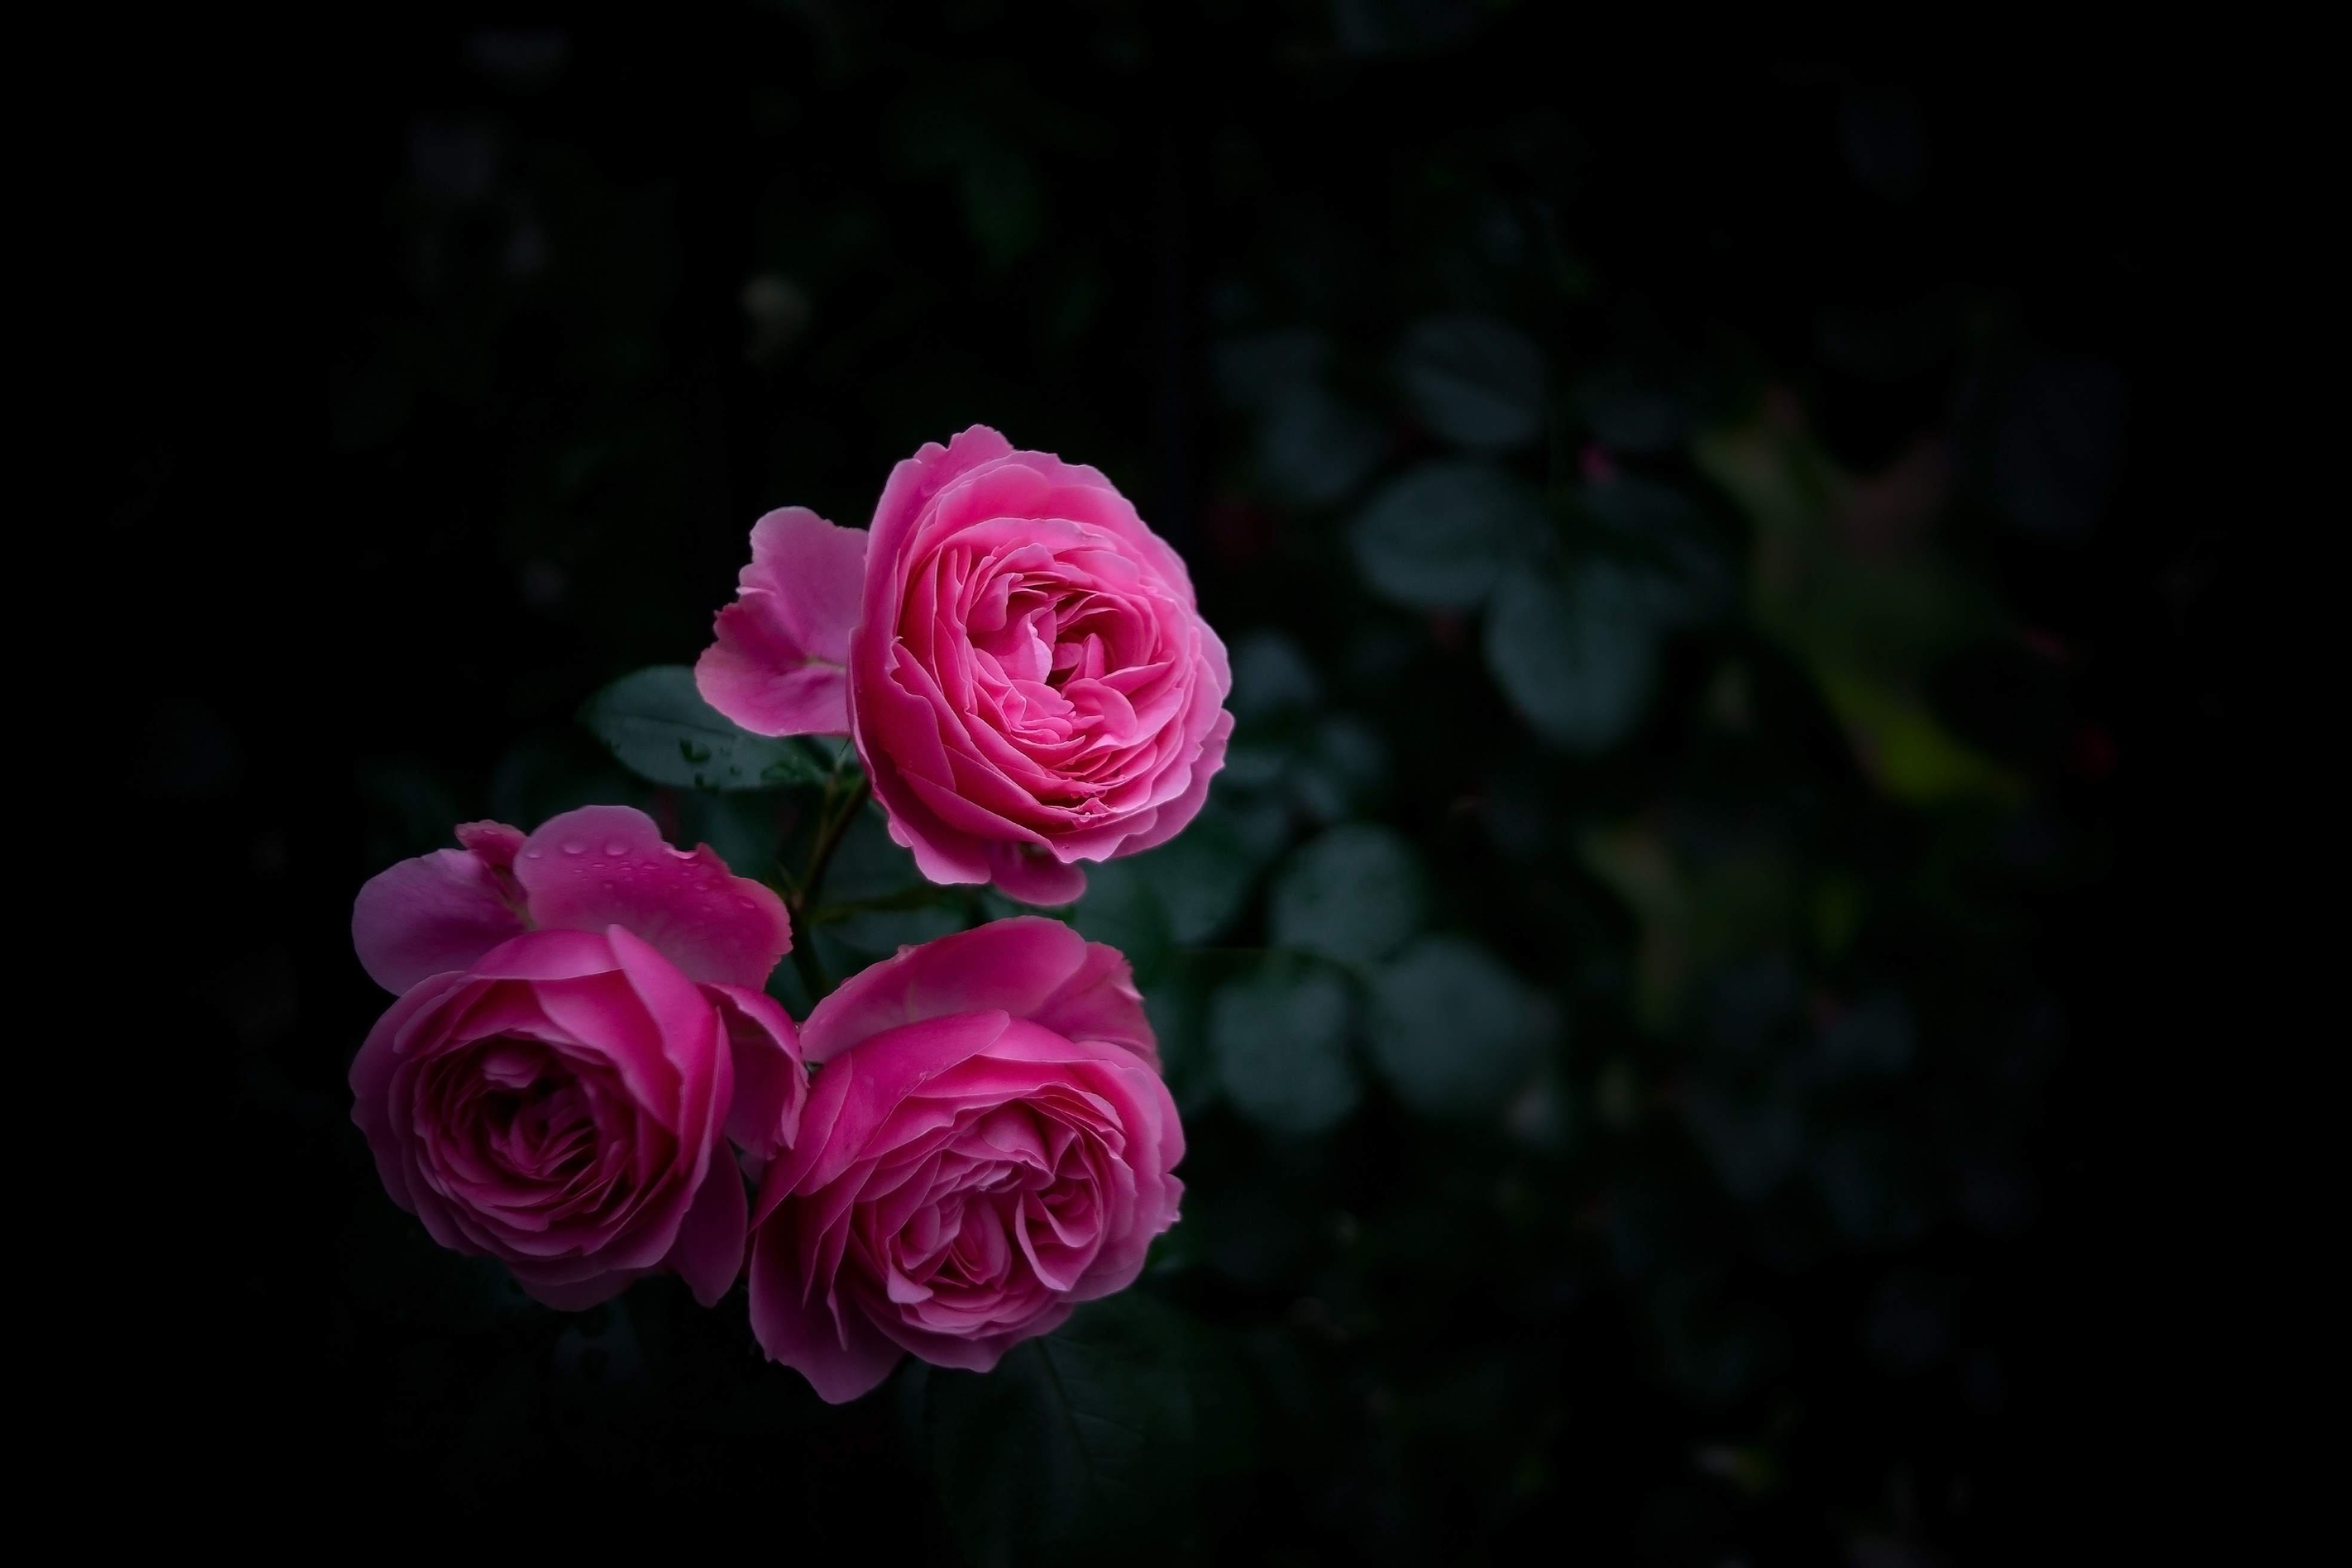 buds, bush, rose flower, dark, pink, rose, garden